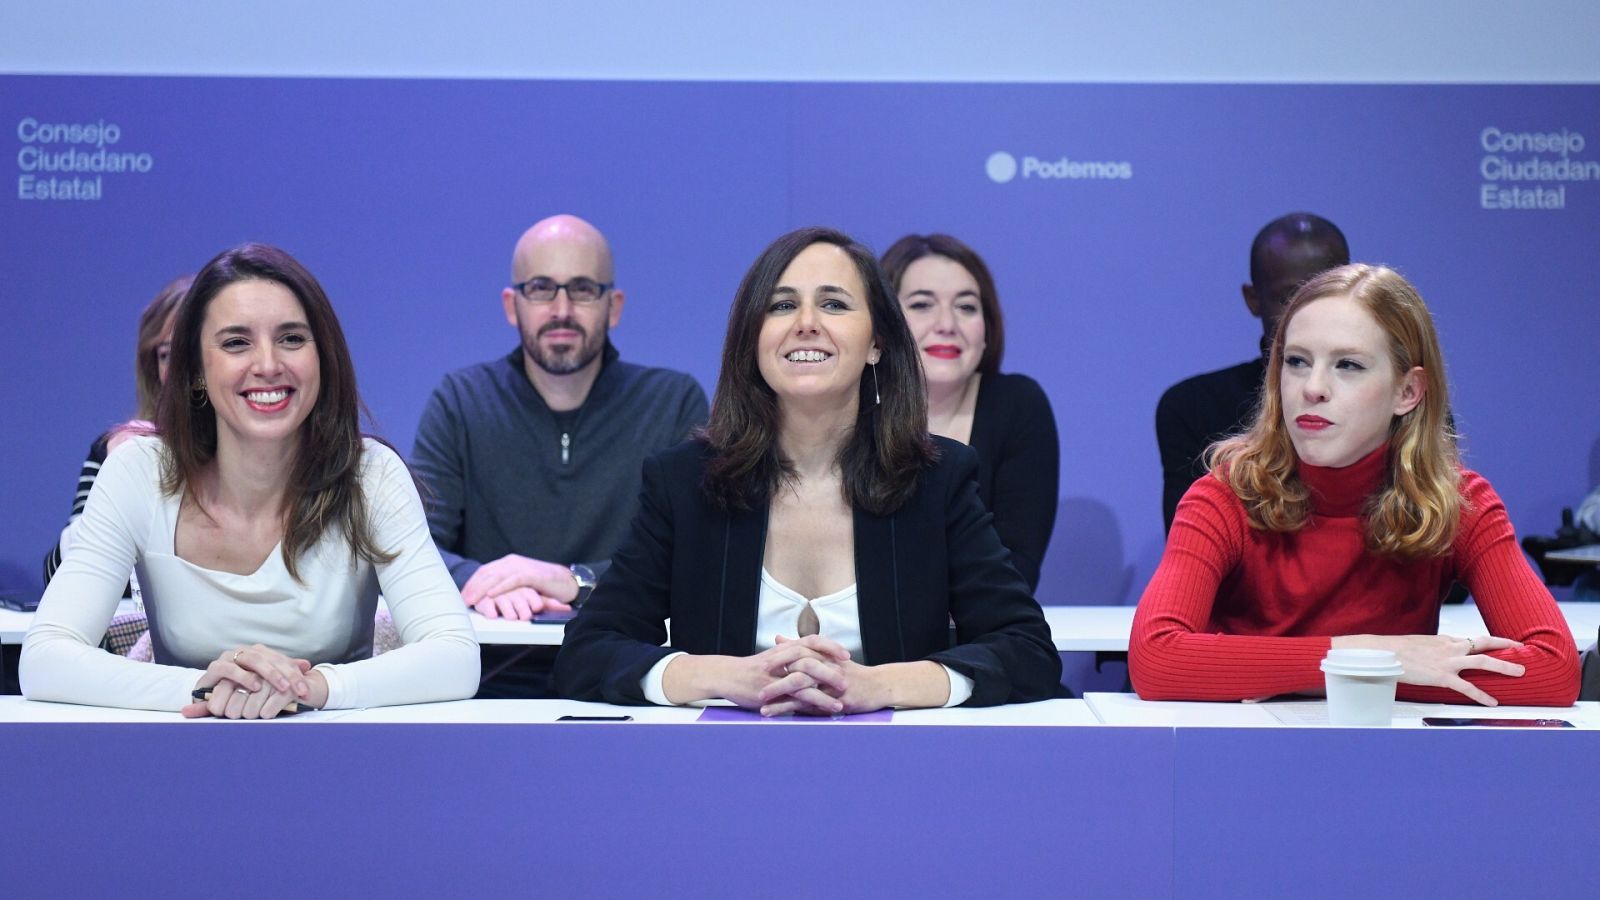 La líder de Podemos, Ione Belarra, junto a Irene Montero y Lilith Vestrynge, en la reunión del Consejo Ciudadano de Podemos.